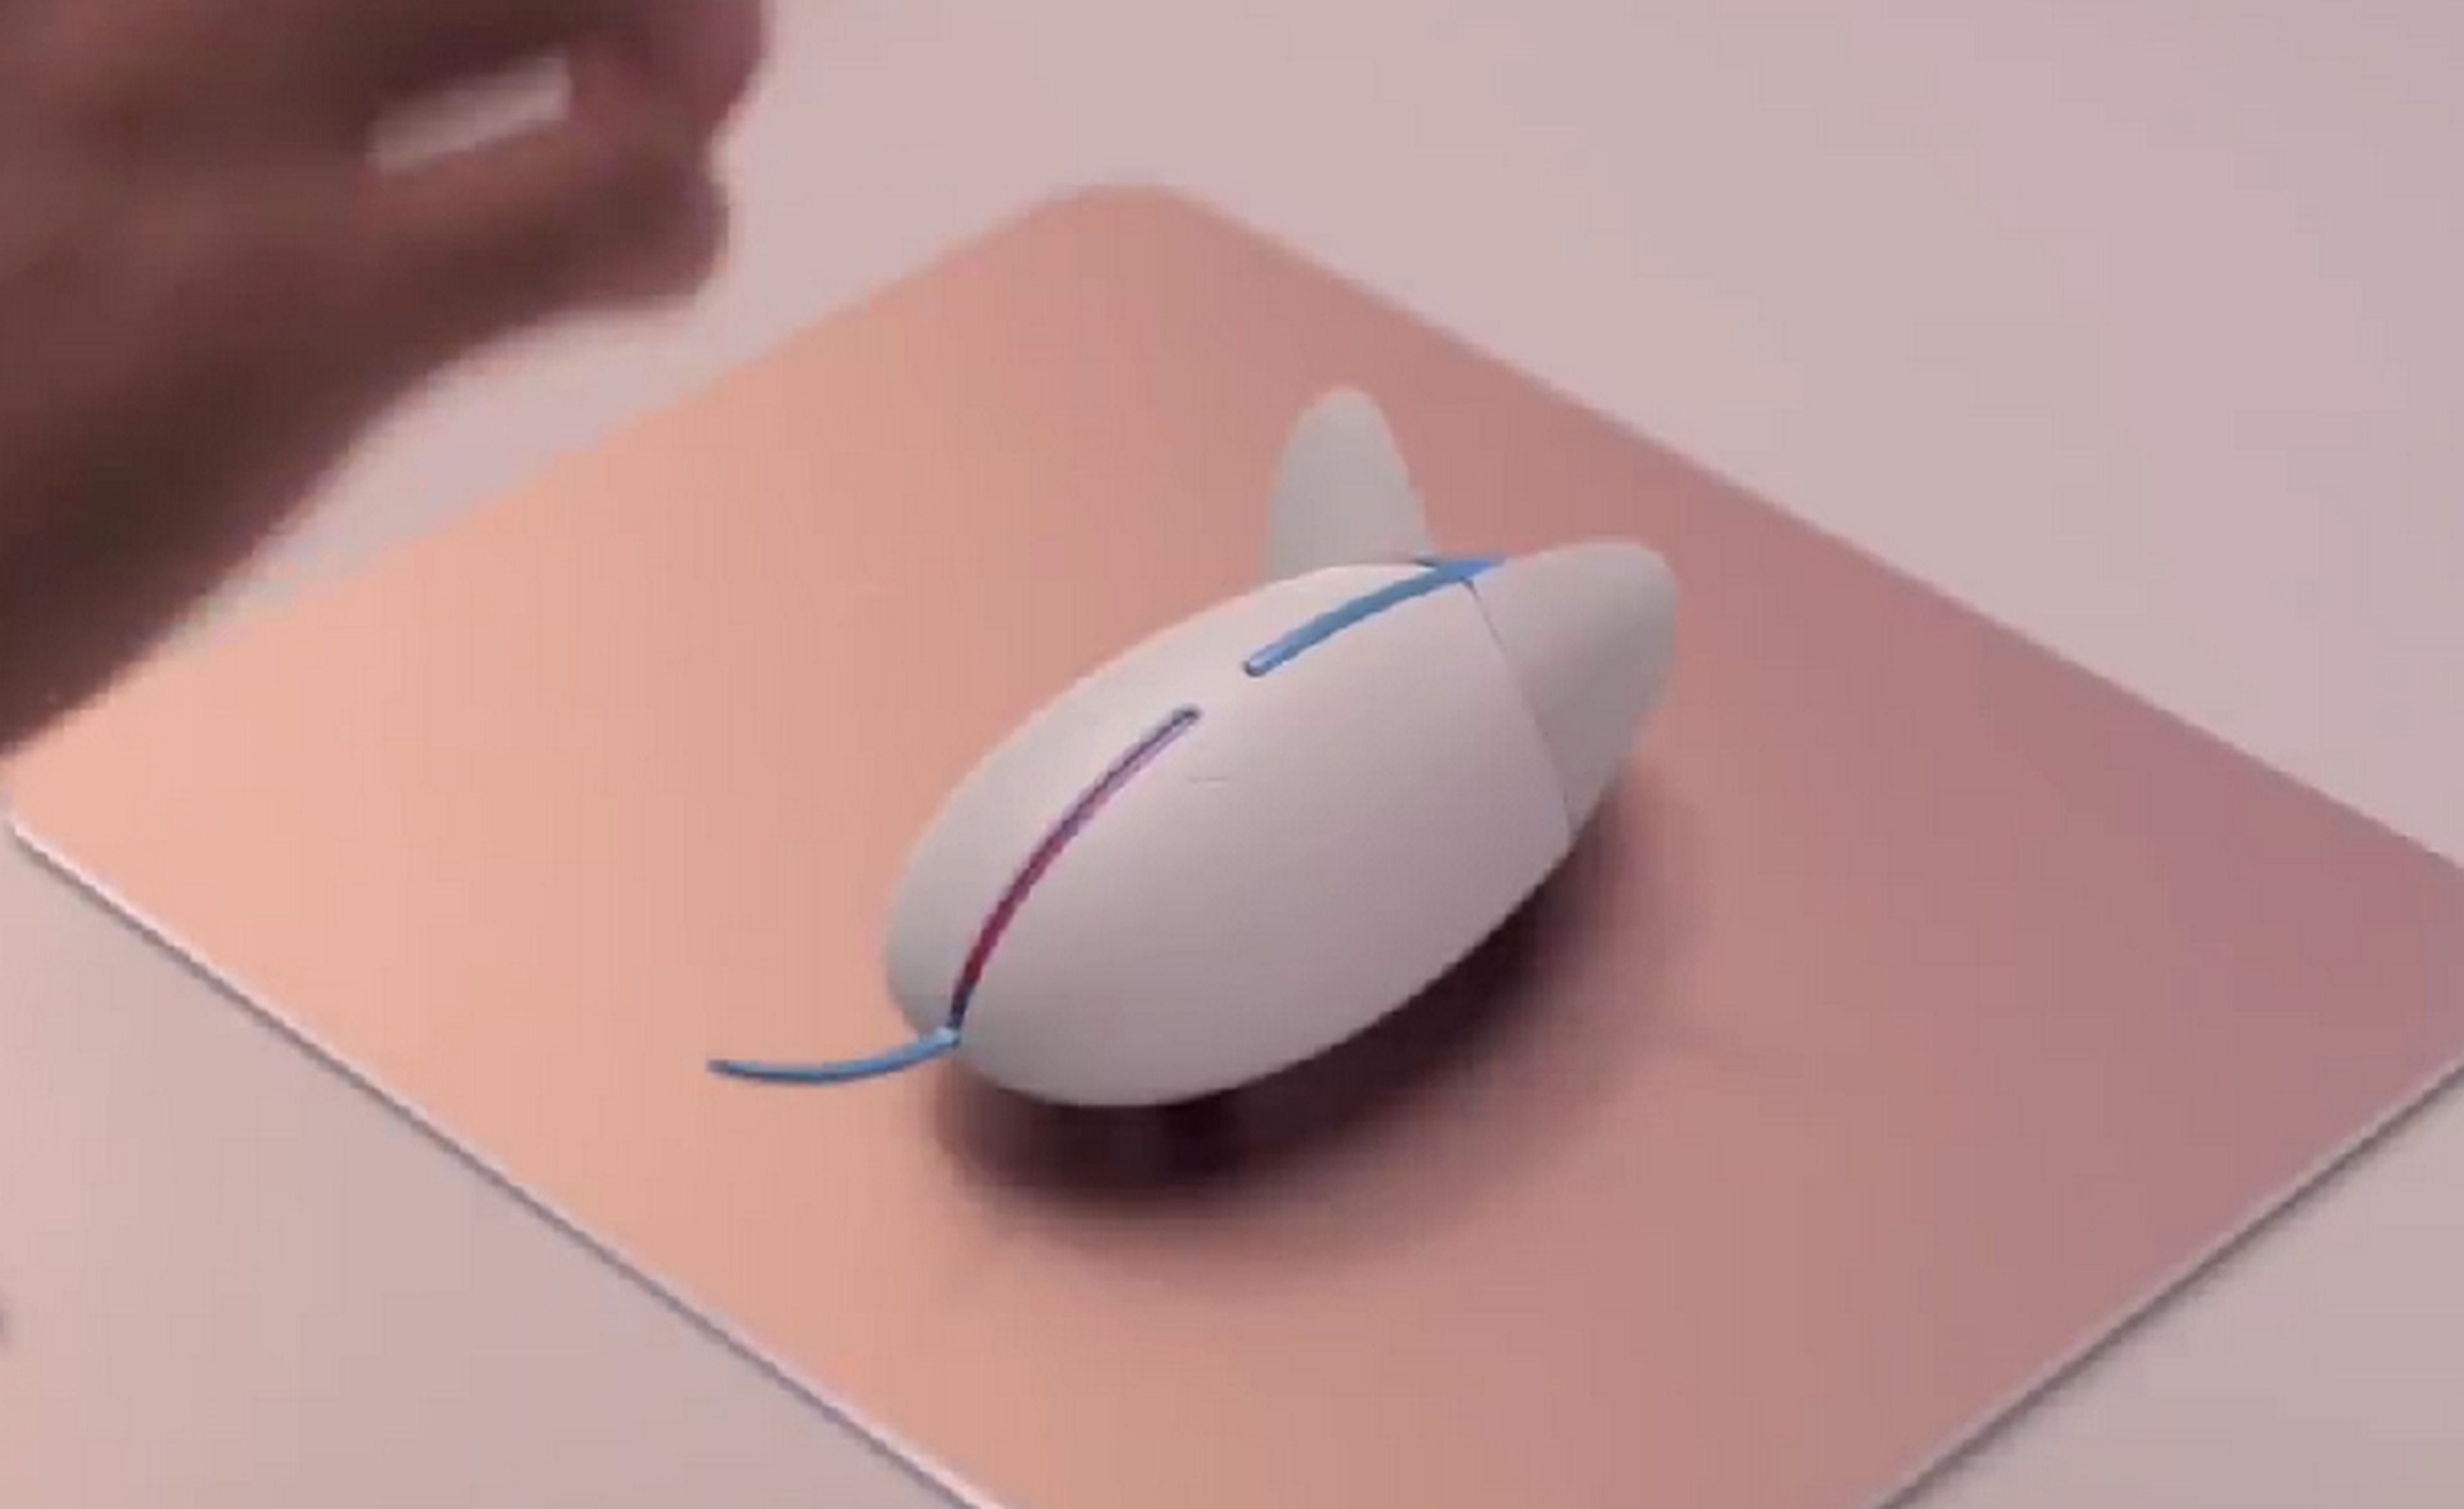 El ratón de Samsung que sale corriendo si trabajas demasiado